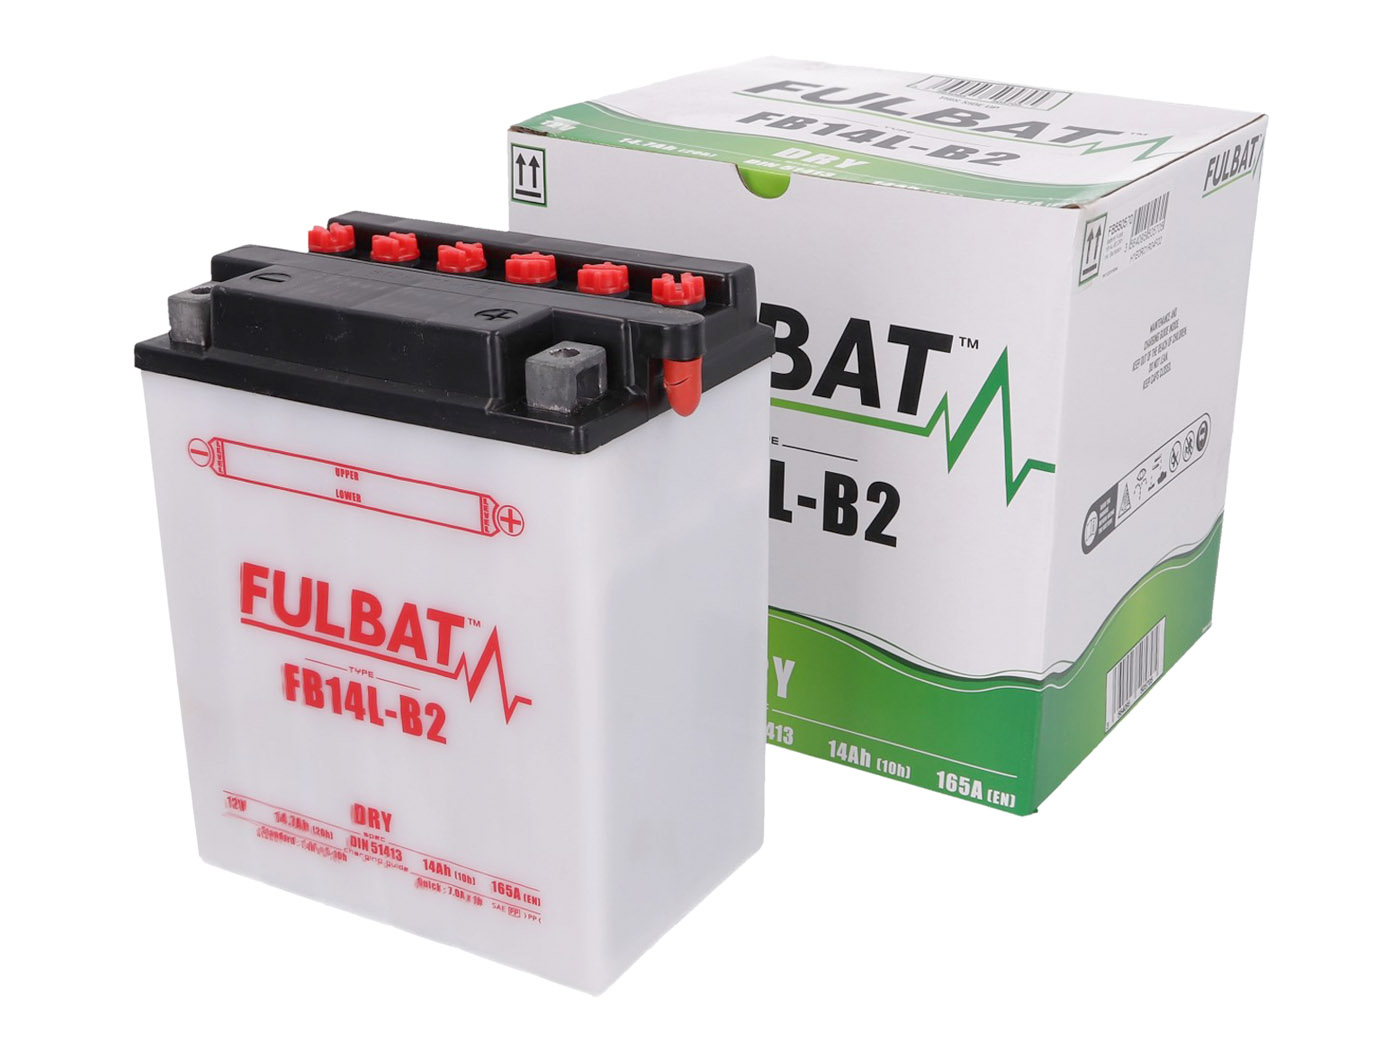 Fulbat FB14L-B2 Batterie